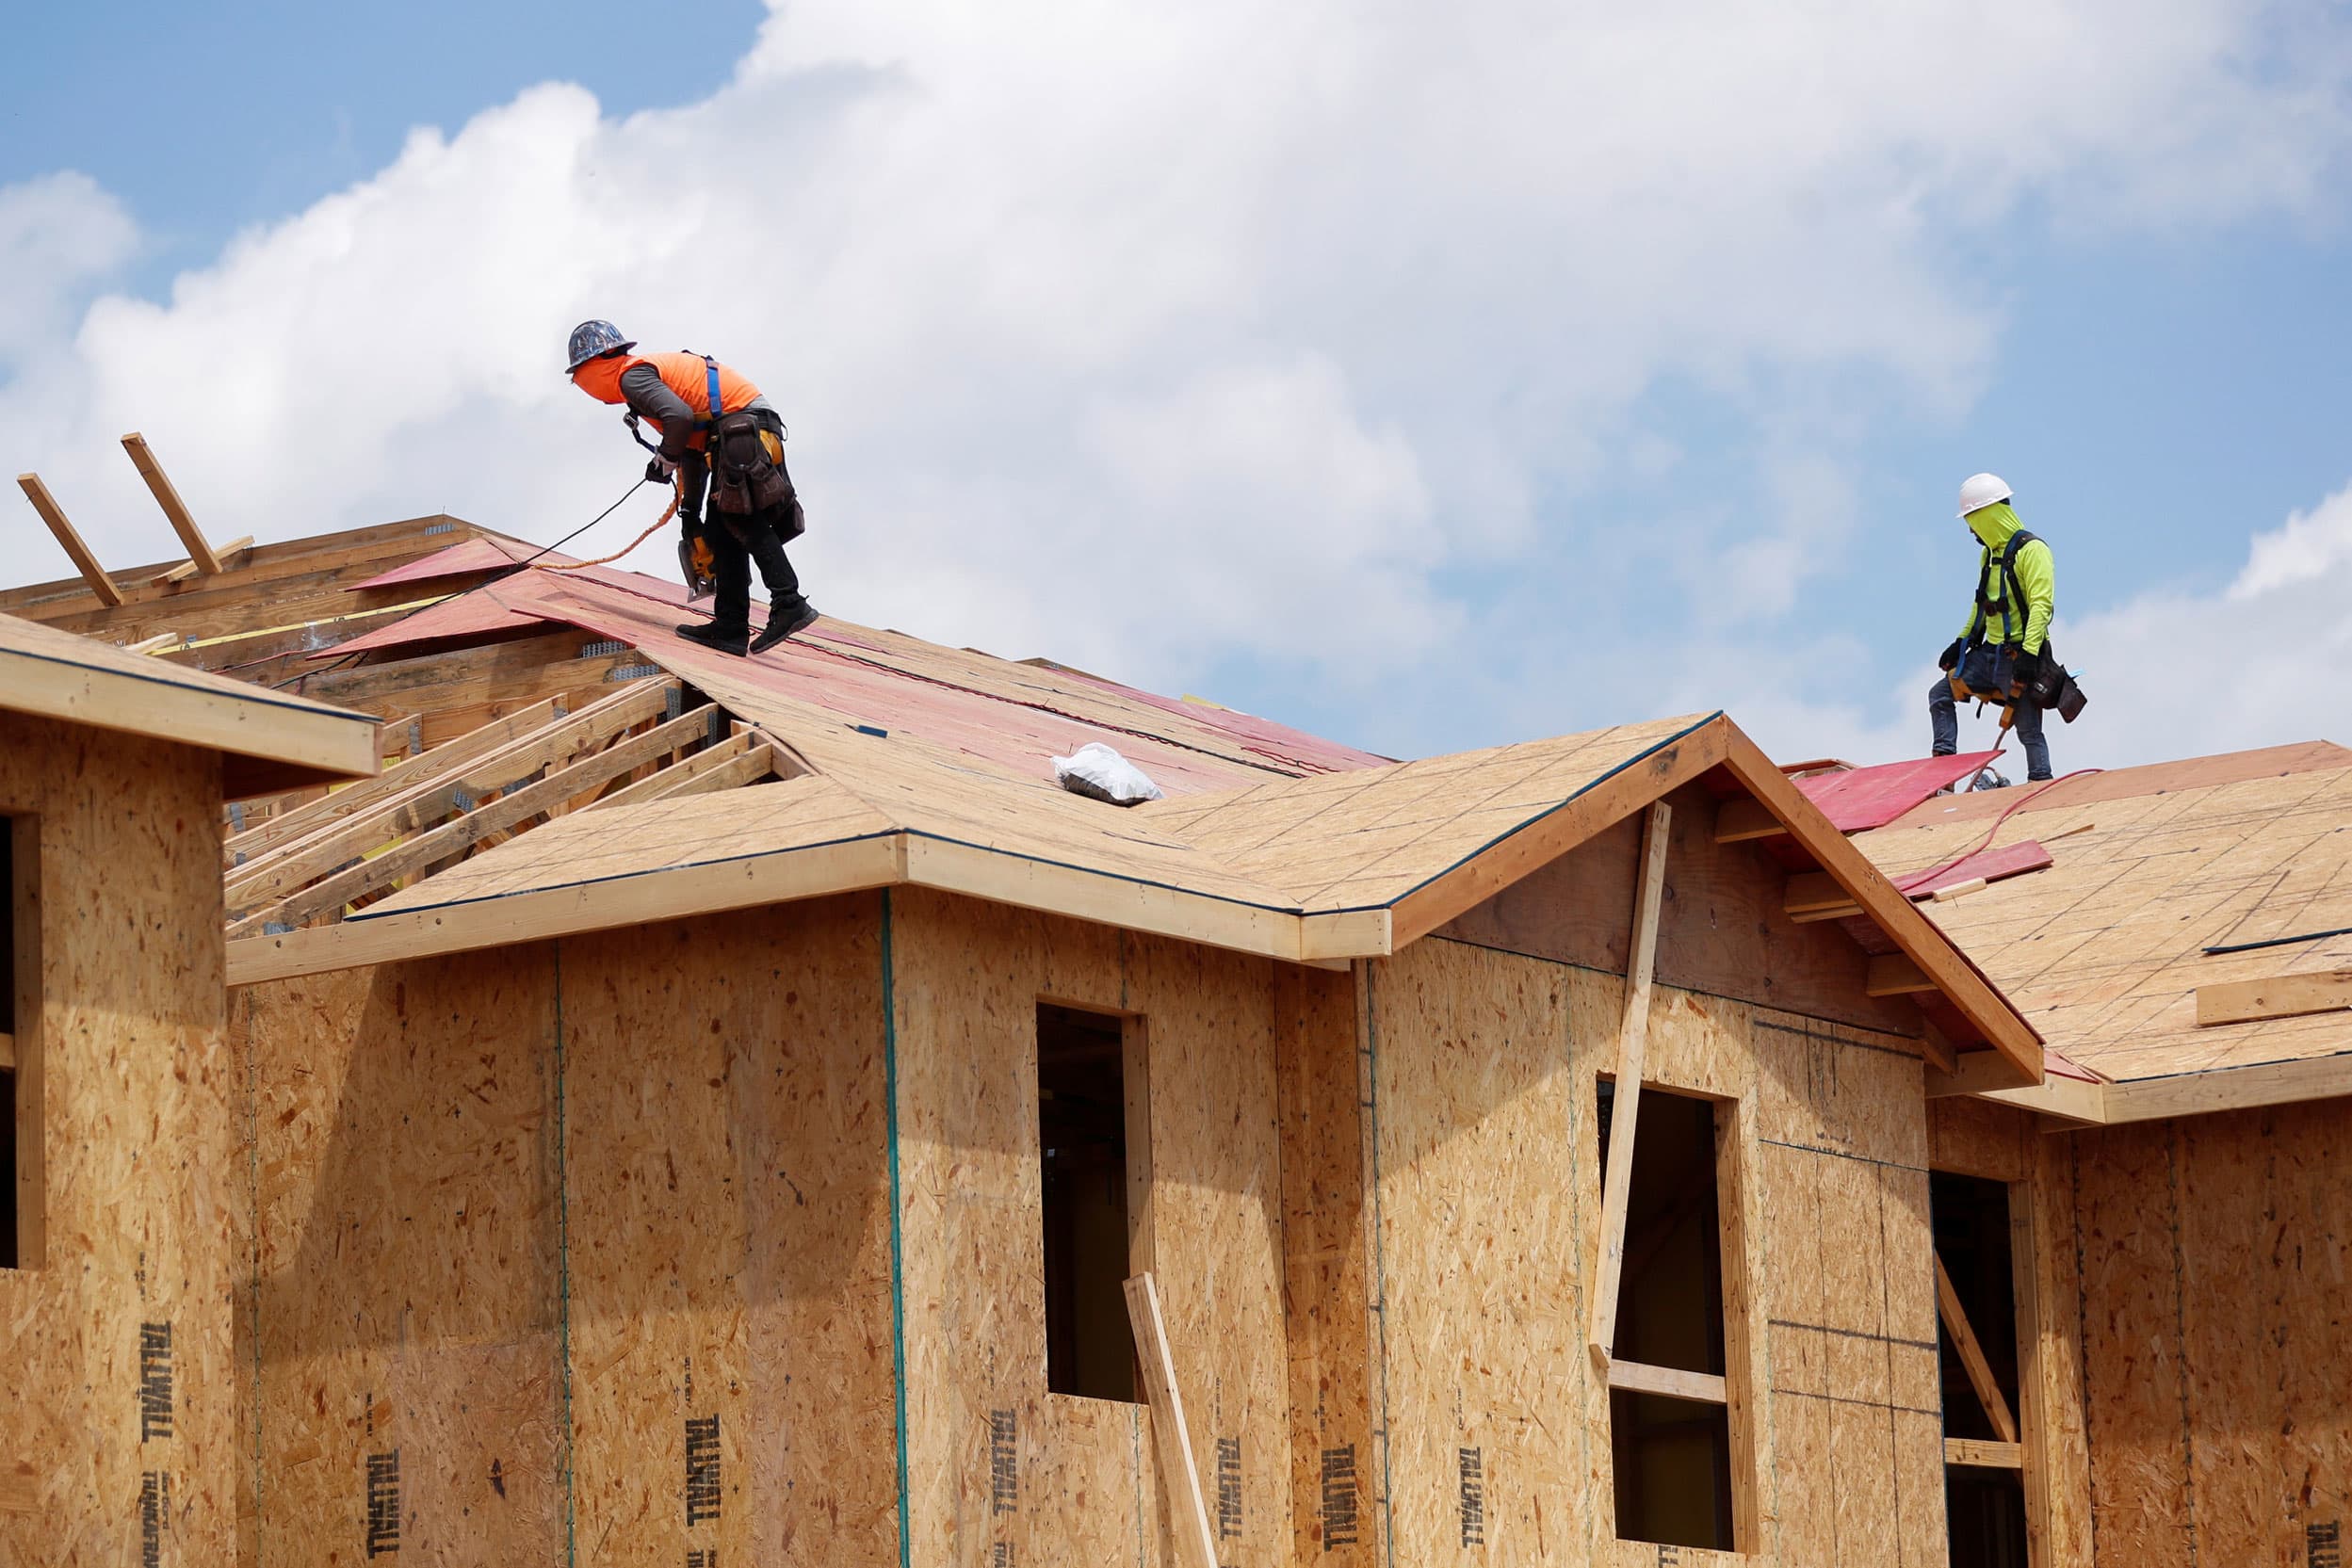 La confianza de los constructores de viviendas supera las expectativas, ya que la demanda de los compradores sigue siendo alta